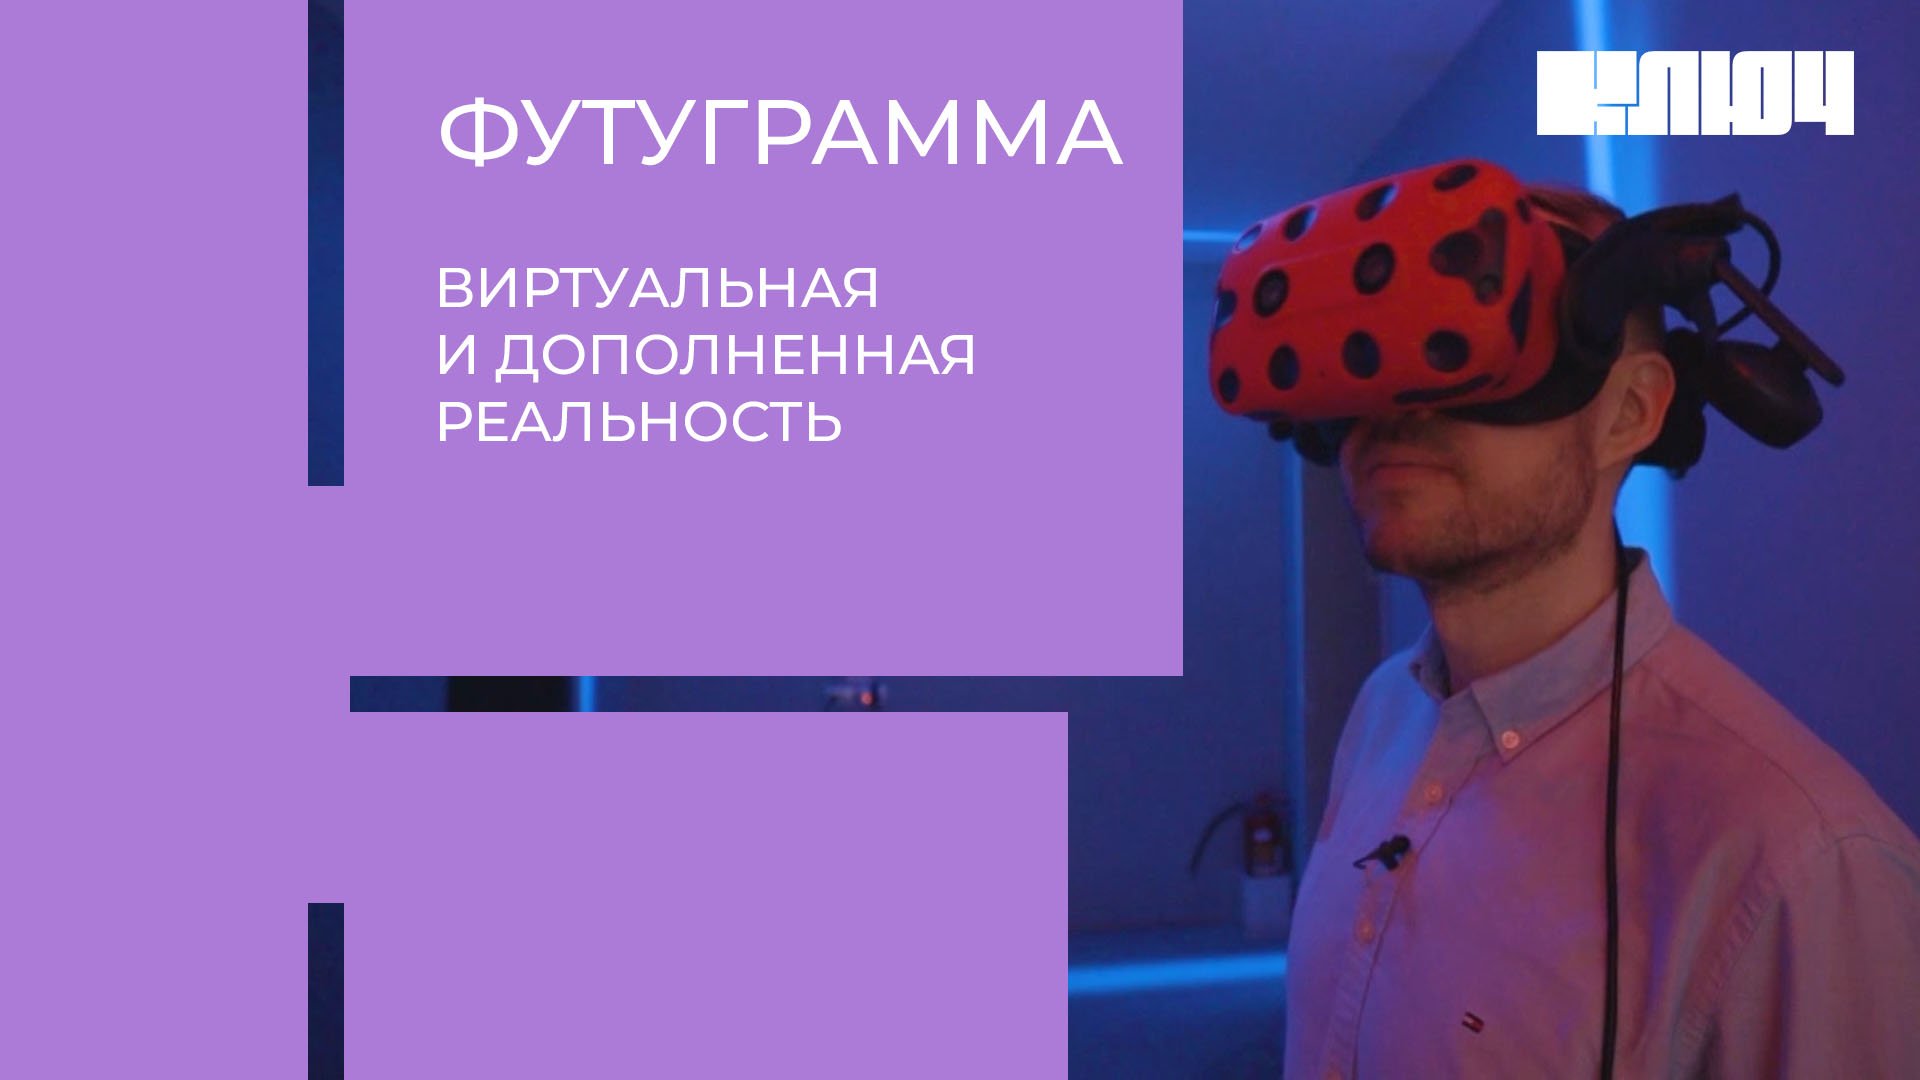 Как VR лечит, помогает расслабляться космонавтам... и коровам – VR/AR в России | Футуграмма